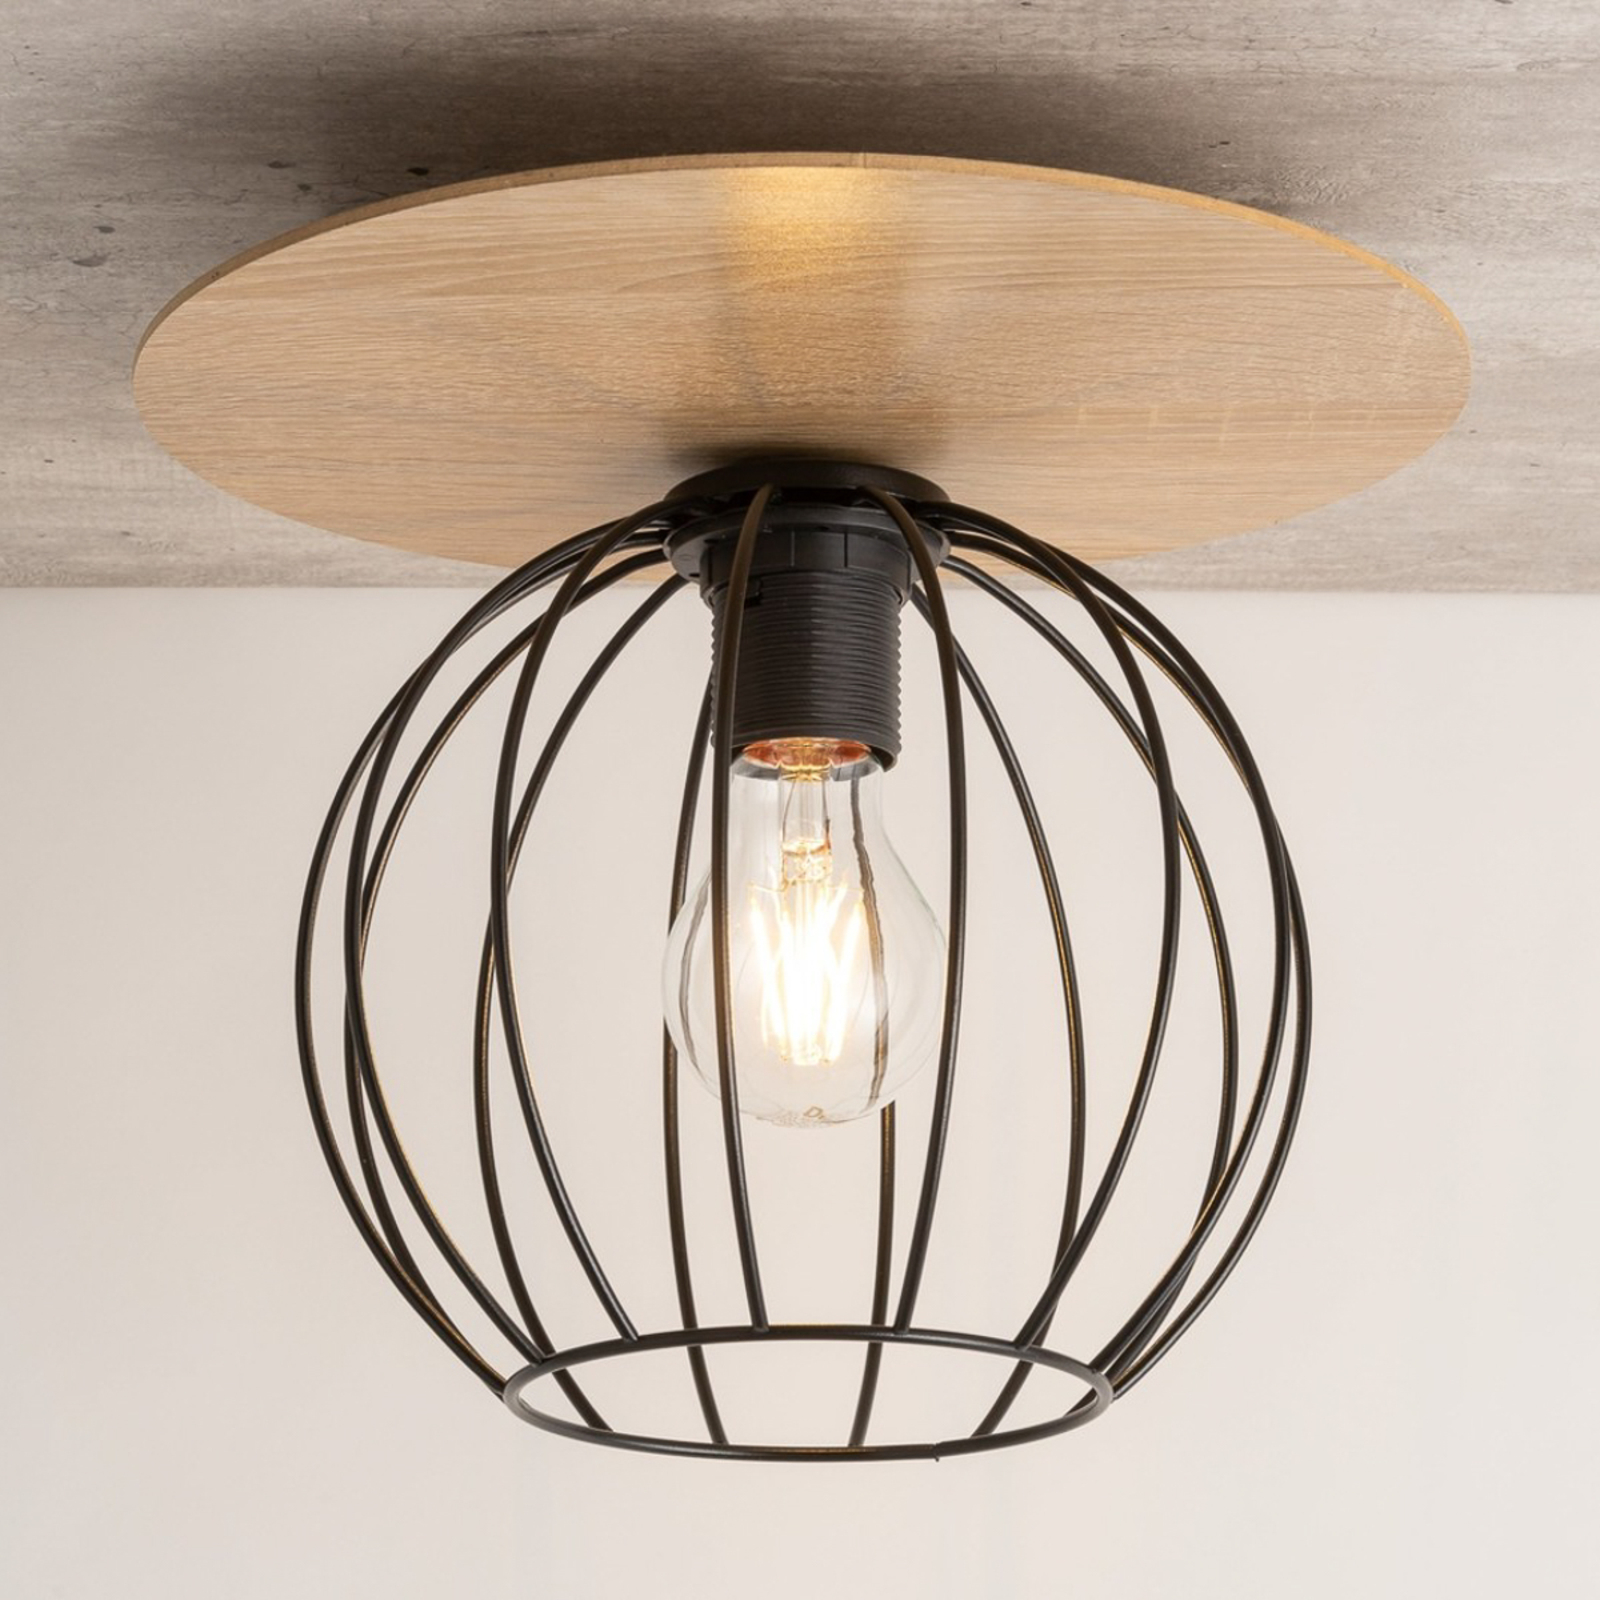 Plafondlamp Malin, houten kap rond, 1-lamp